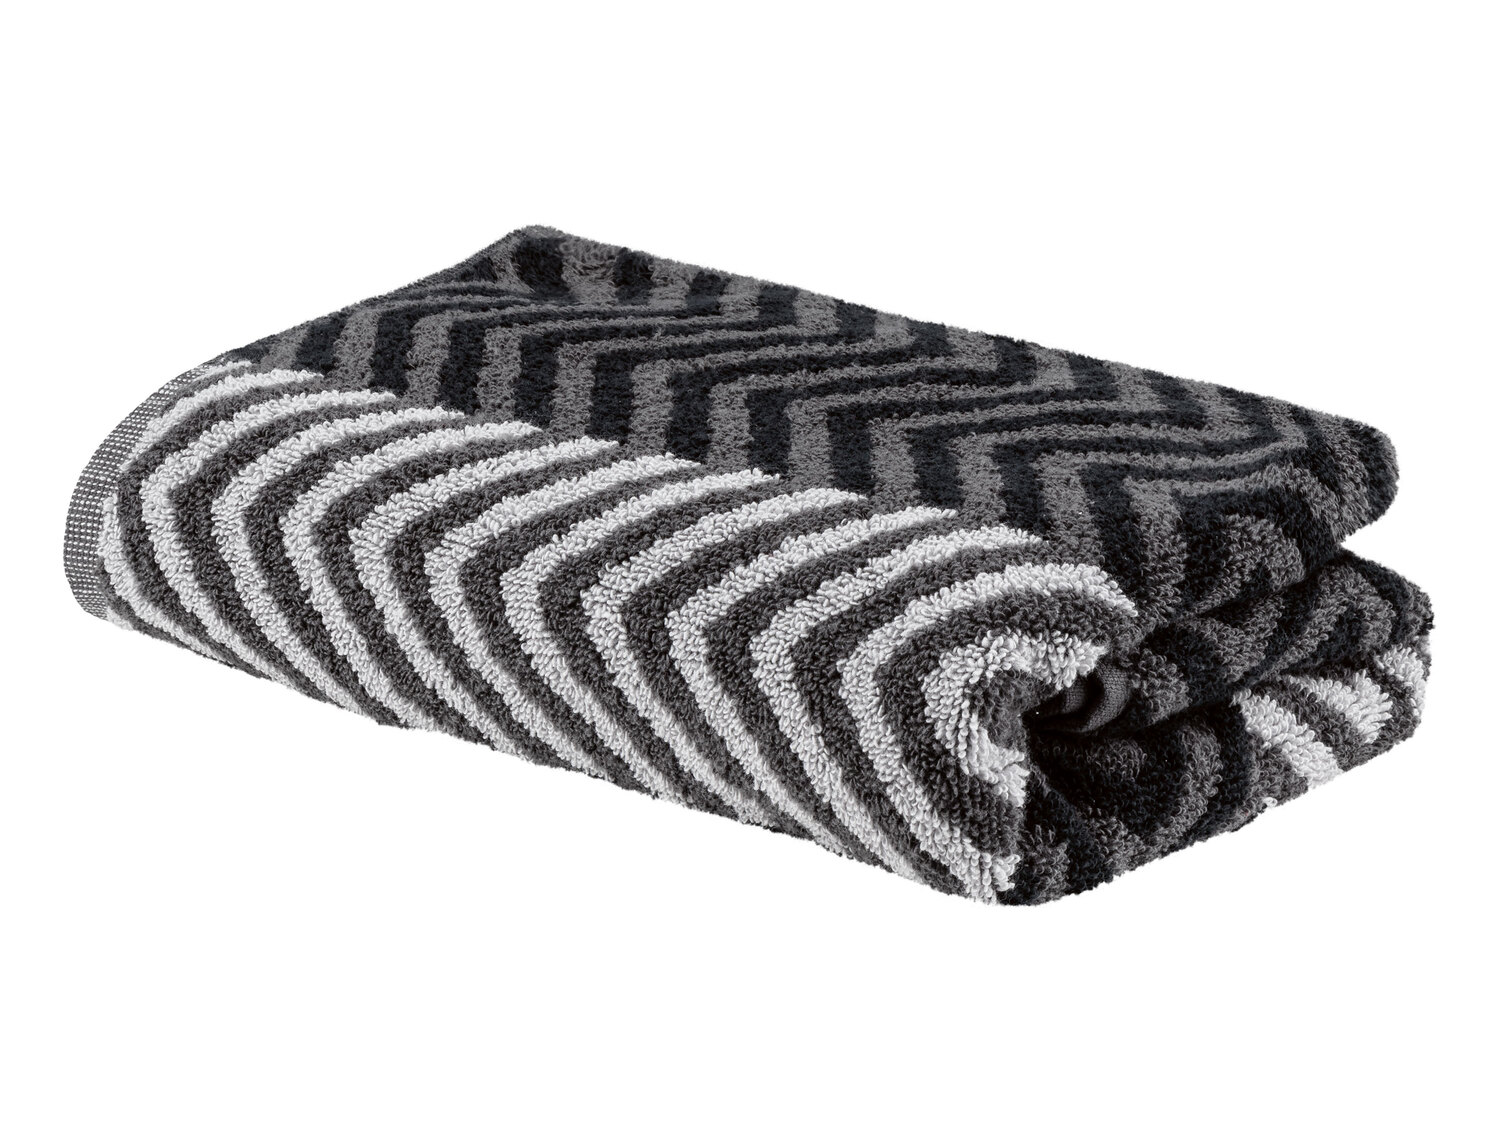 Ręcznik 50 x 100 cm Miomare, cena 11,99 PLN 
- 500 g/m2
- 100% bawełny
- miękkie ...